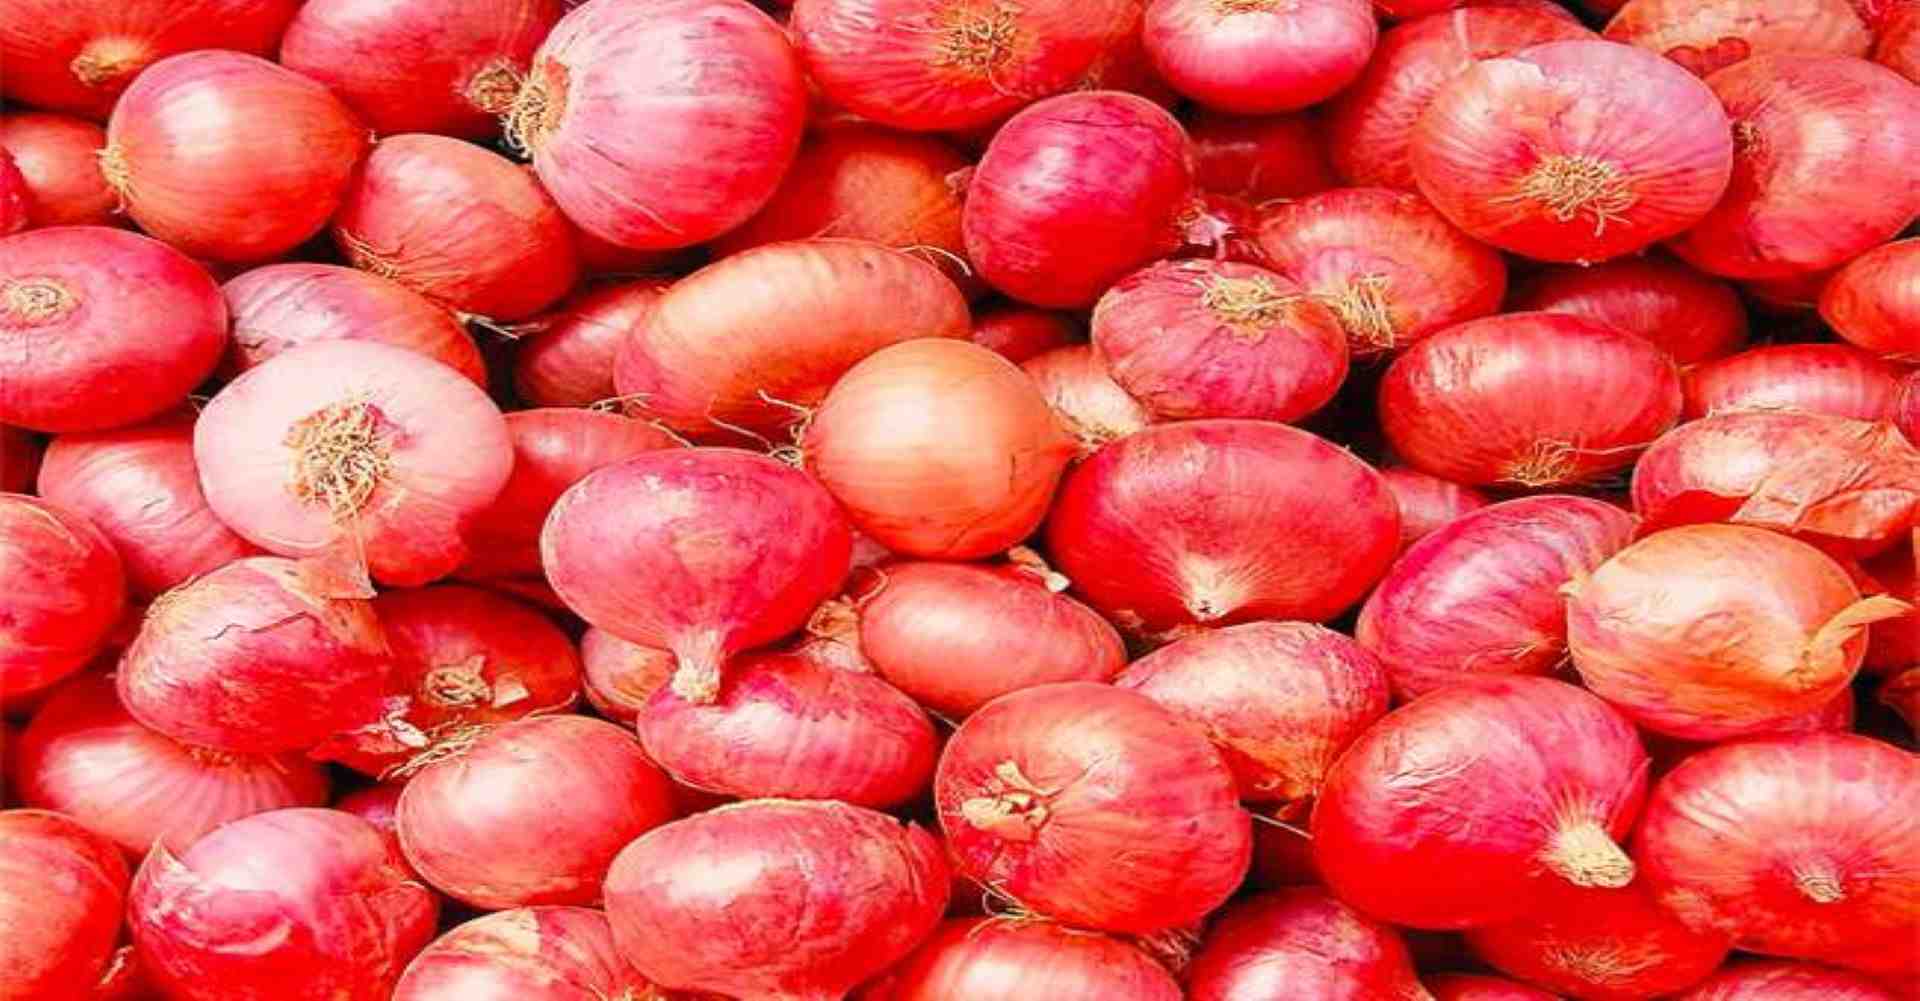 Nasik Onion Market